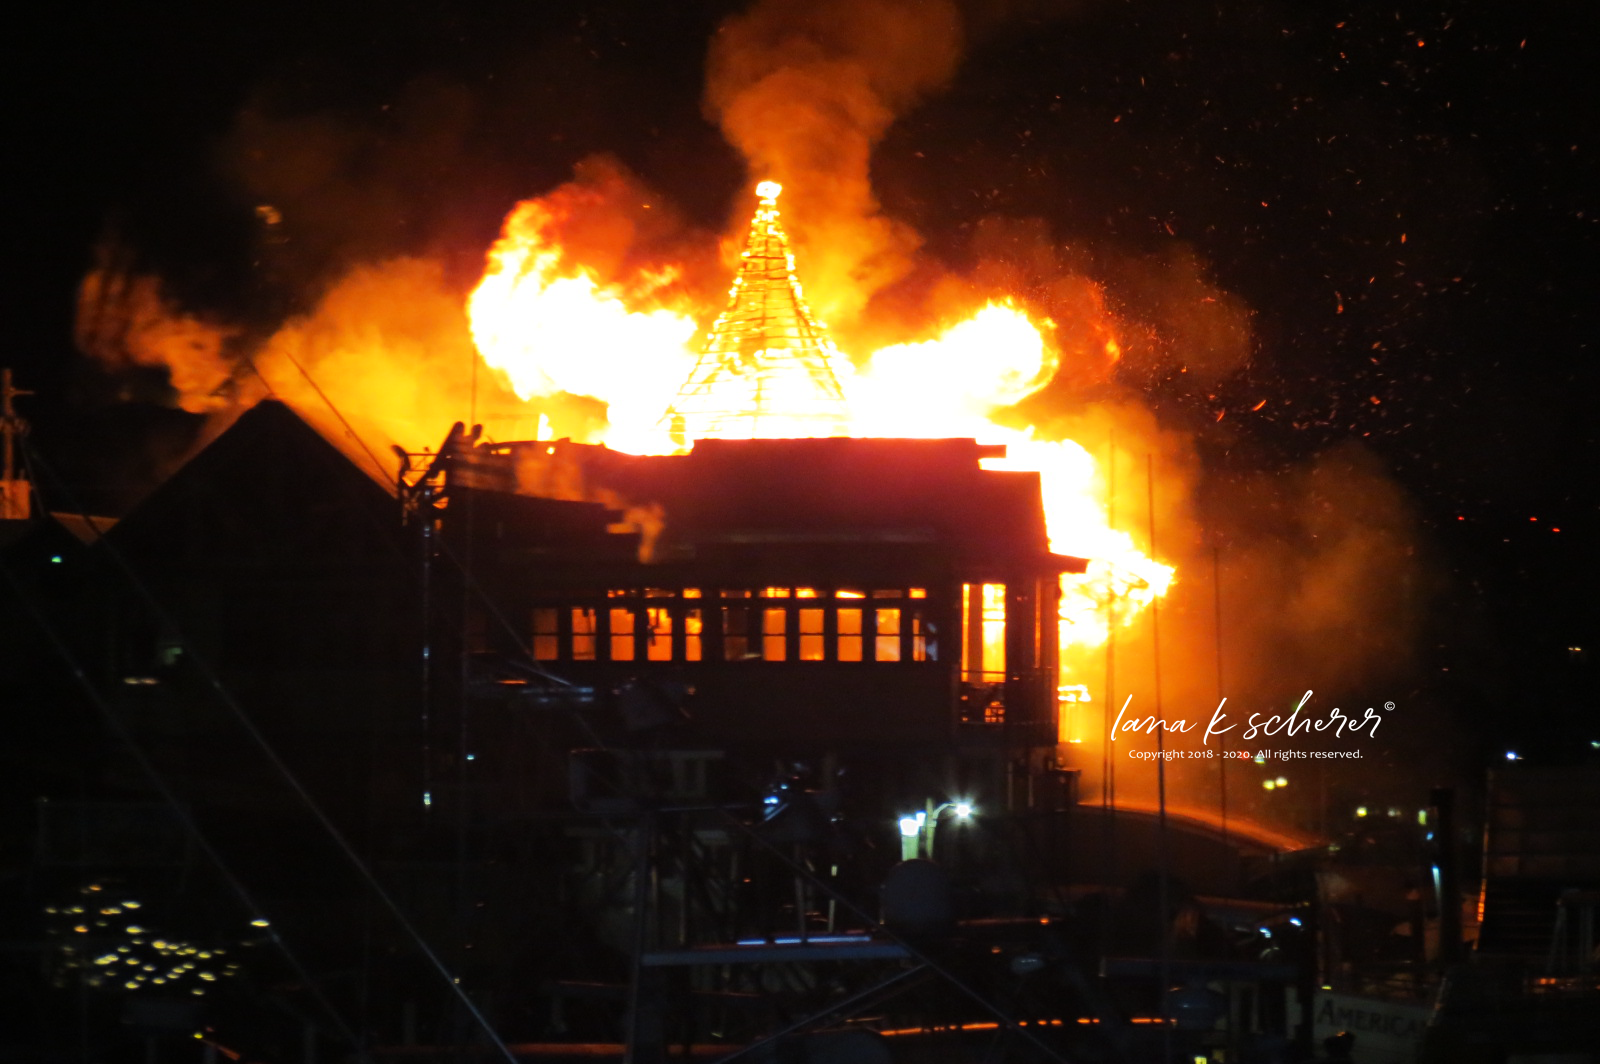 Scene of the fire at AJs restaurant on the Destin harbor, February 9, 2016